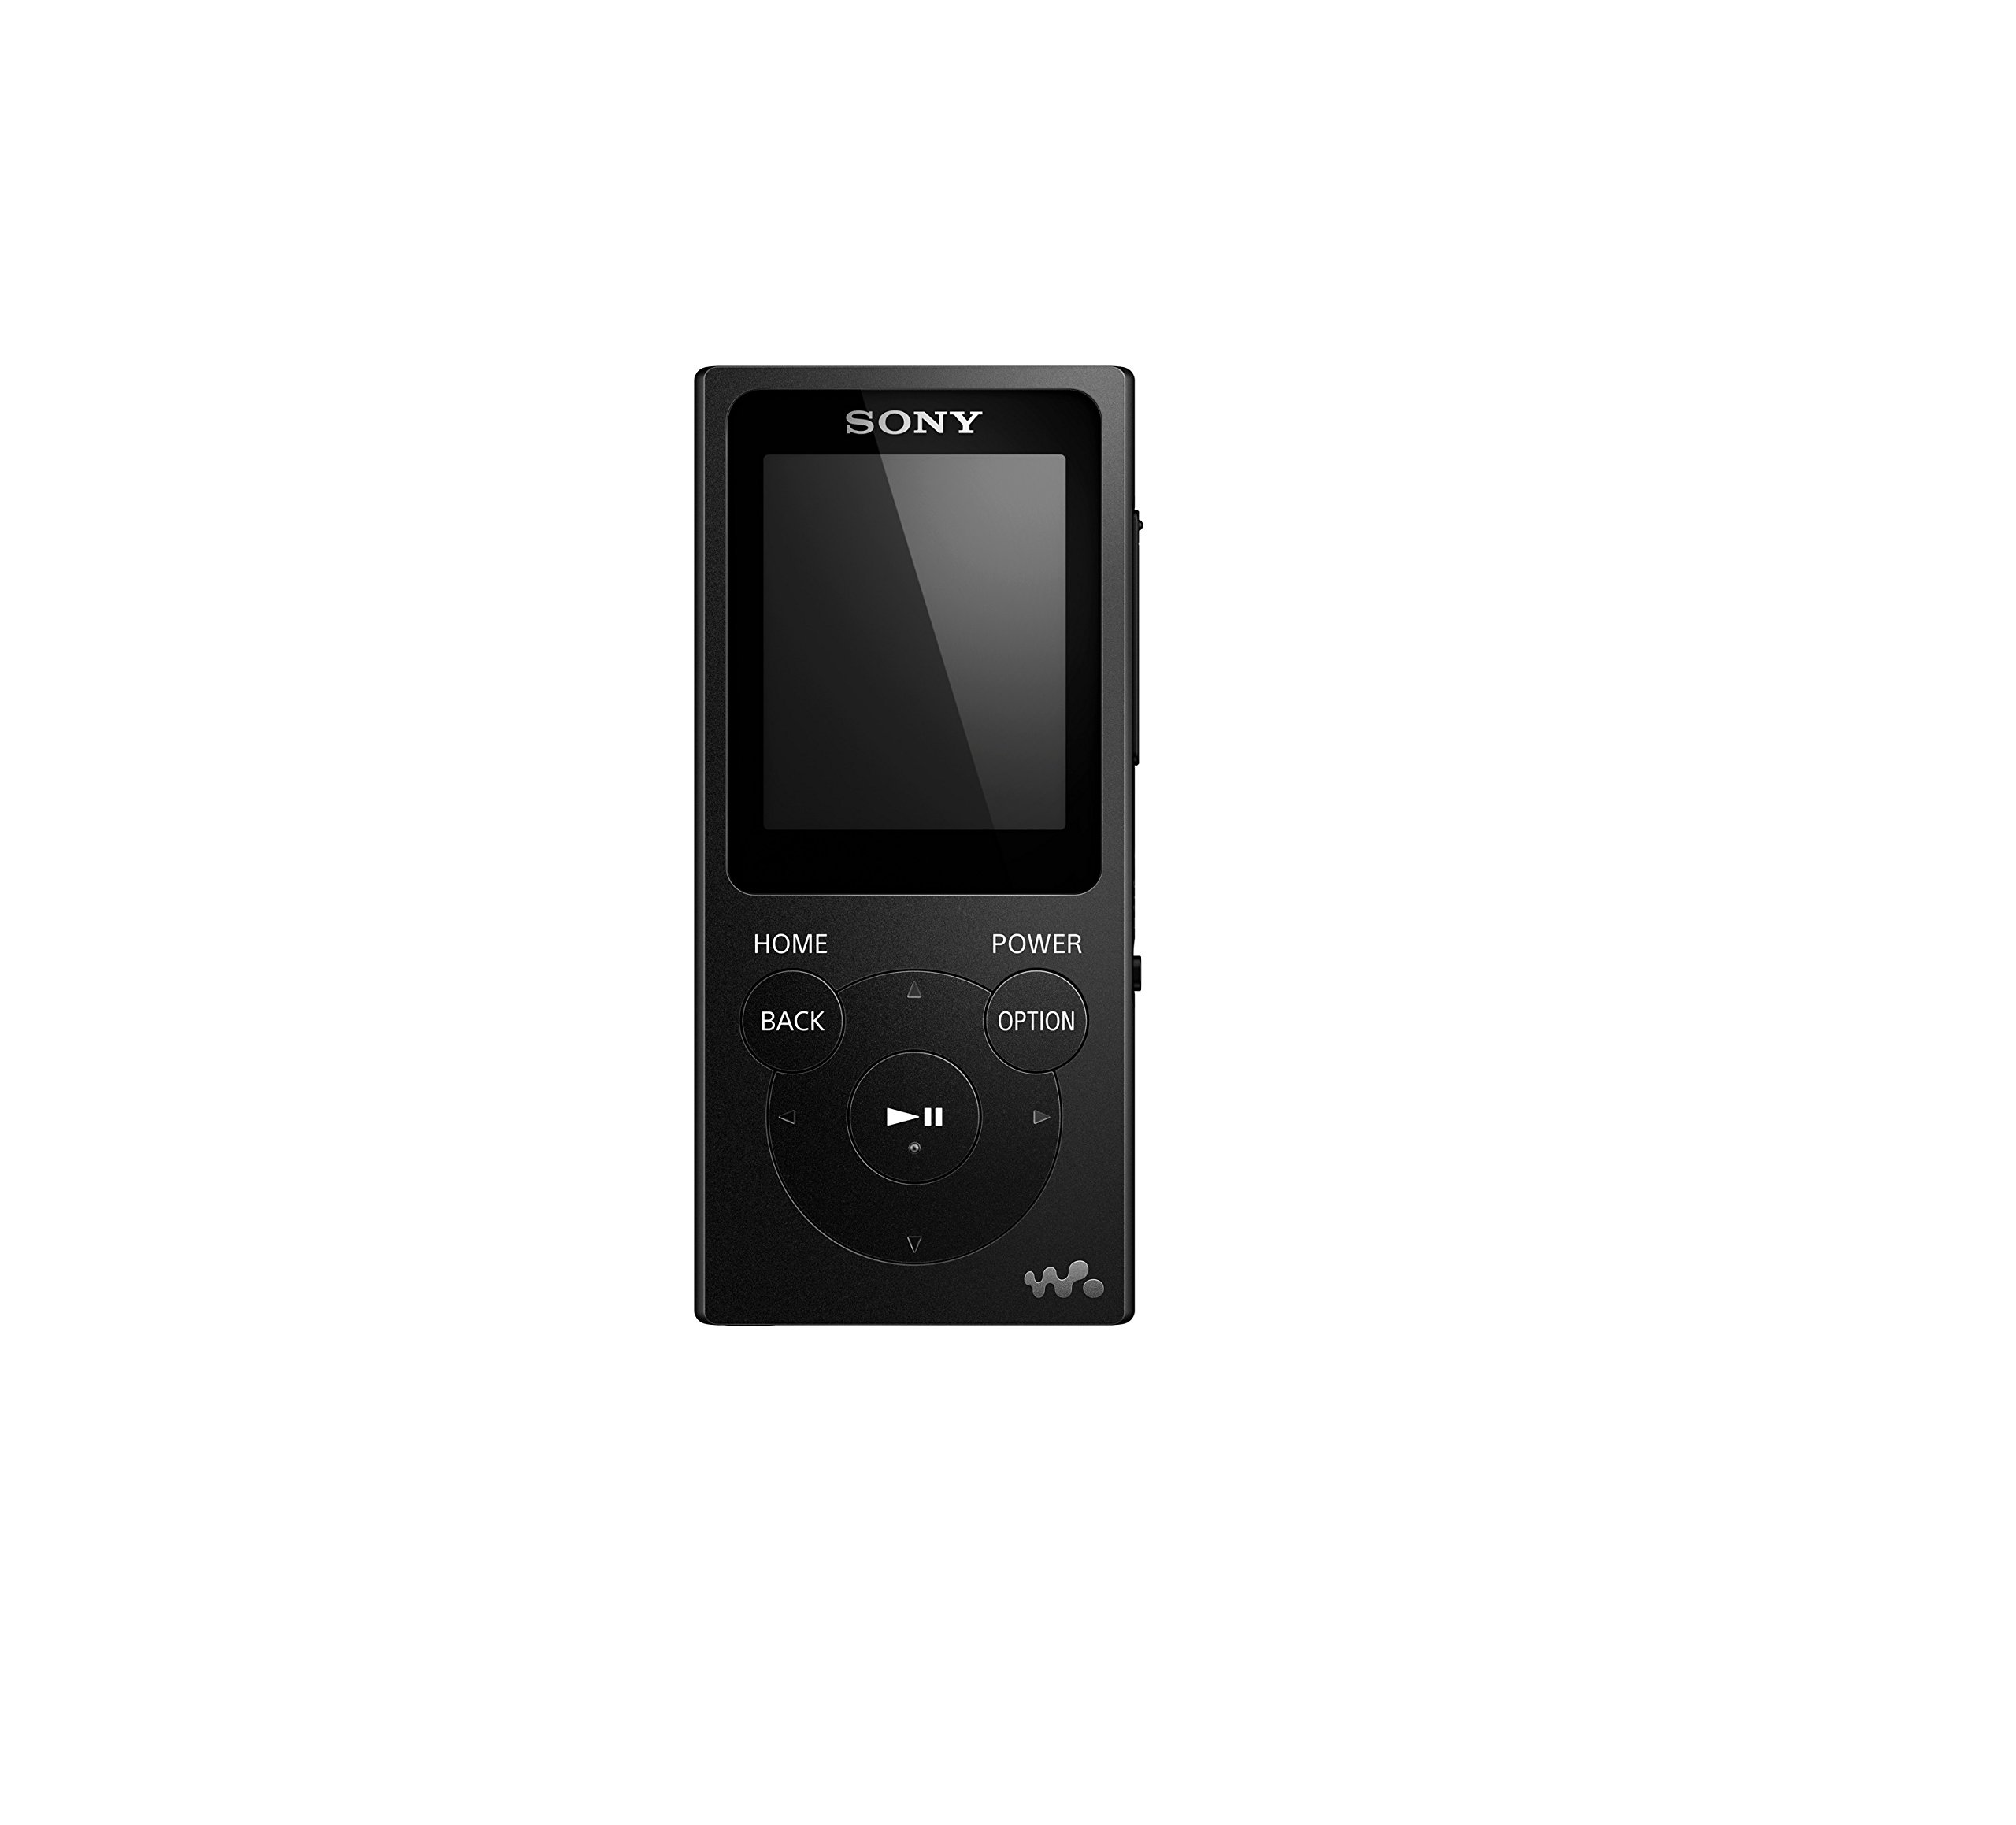 Mua Sony Nwe394b 8gb Walkman Mp3 Player Black Trên Amazon Mỹ Chính Hãng 2023 Giaonhan247 